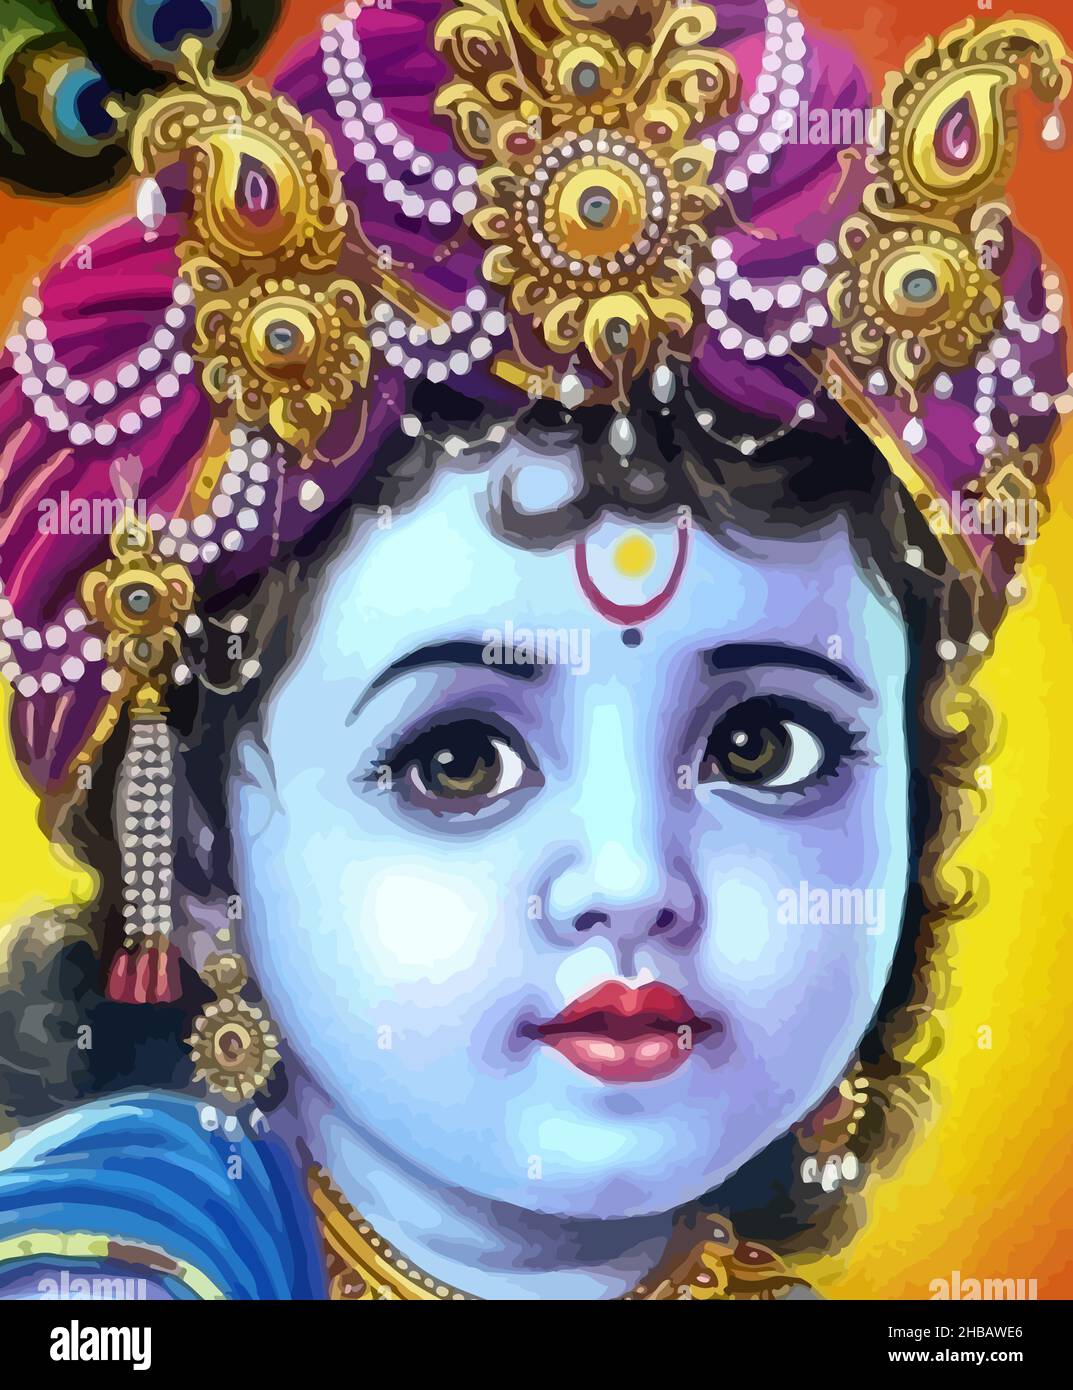 shri krishna govinda hinduism culture mythology illustration Stock Photo